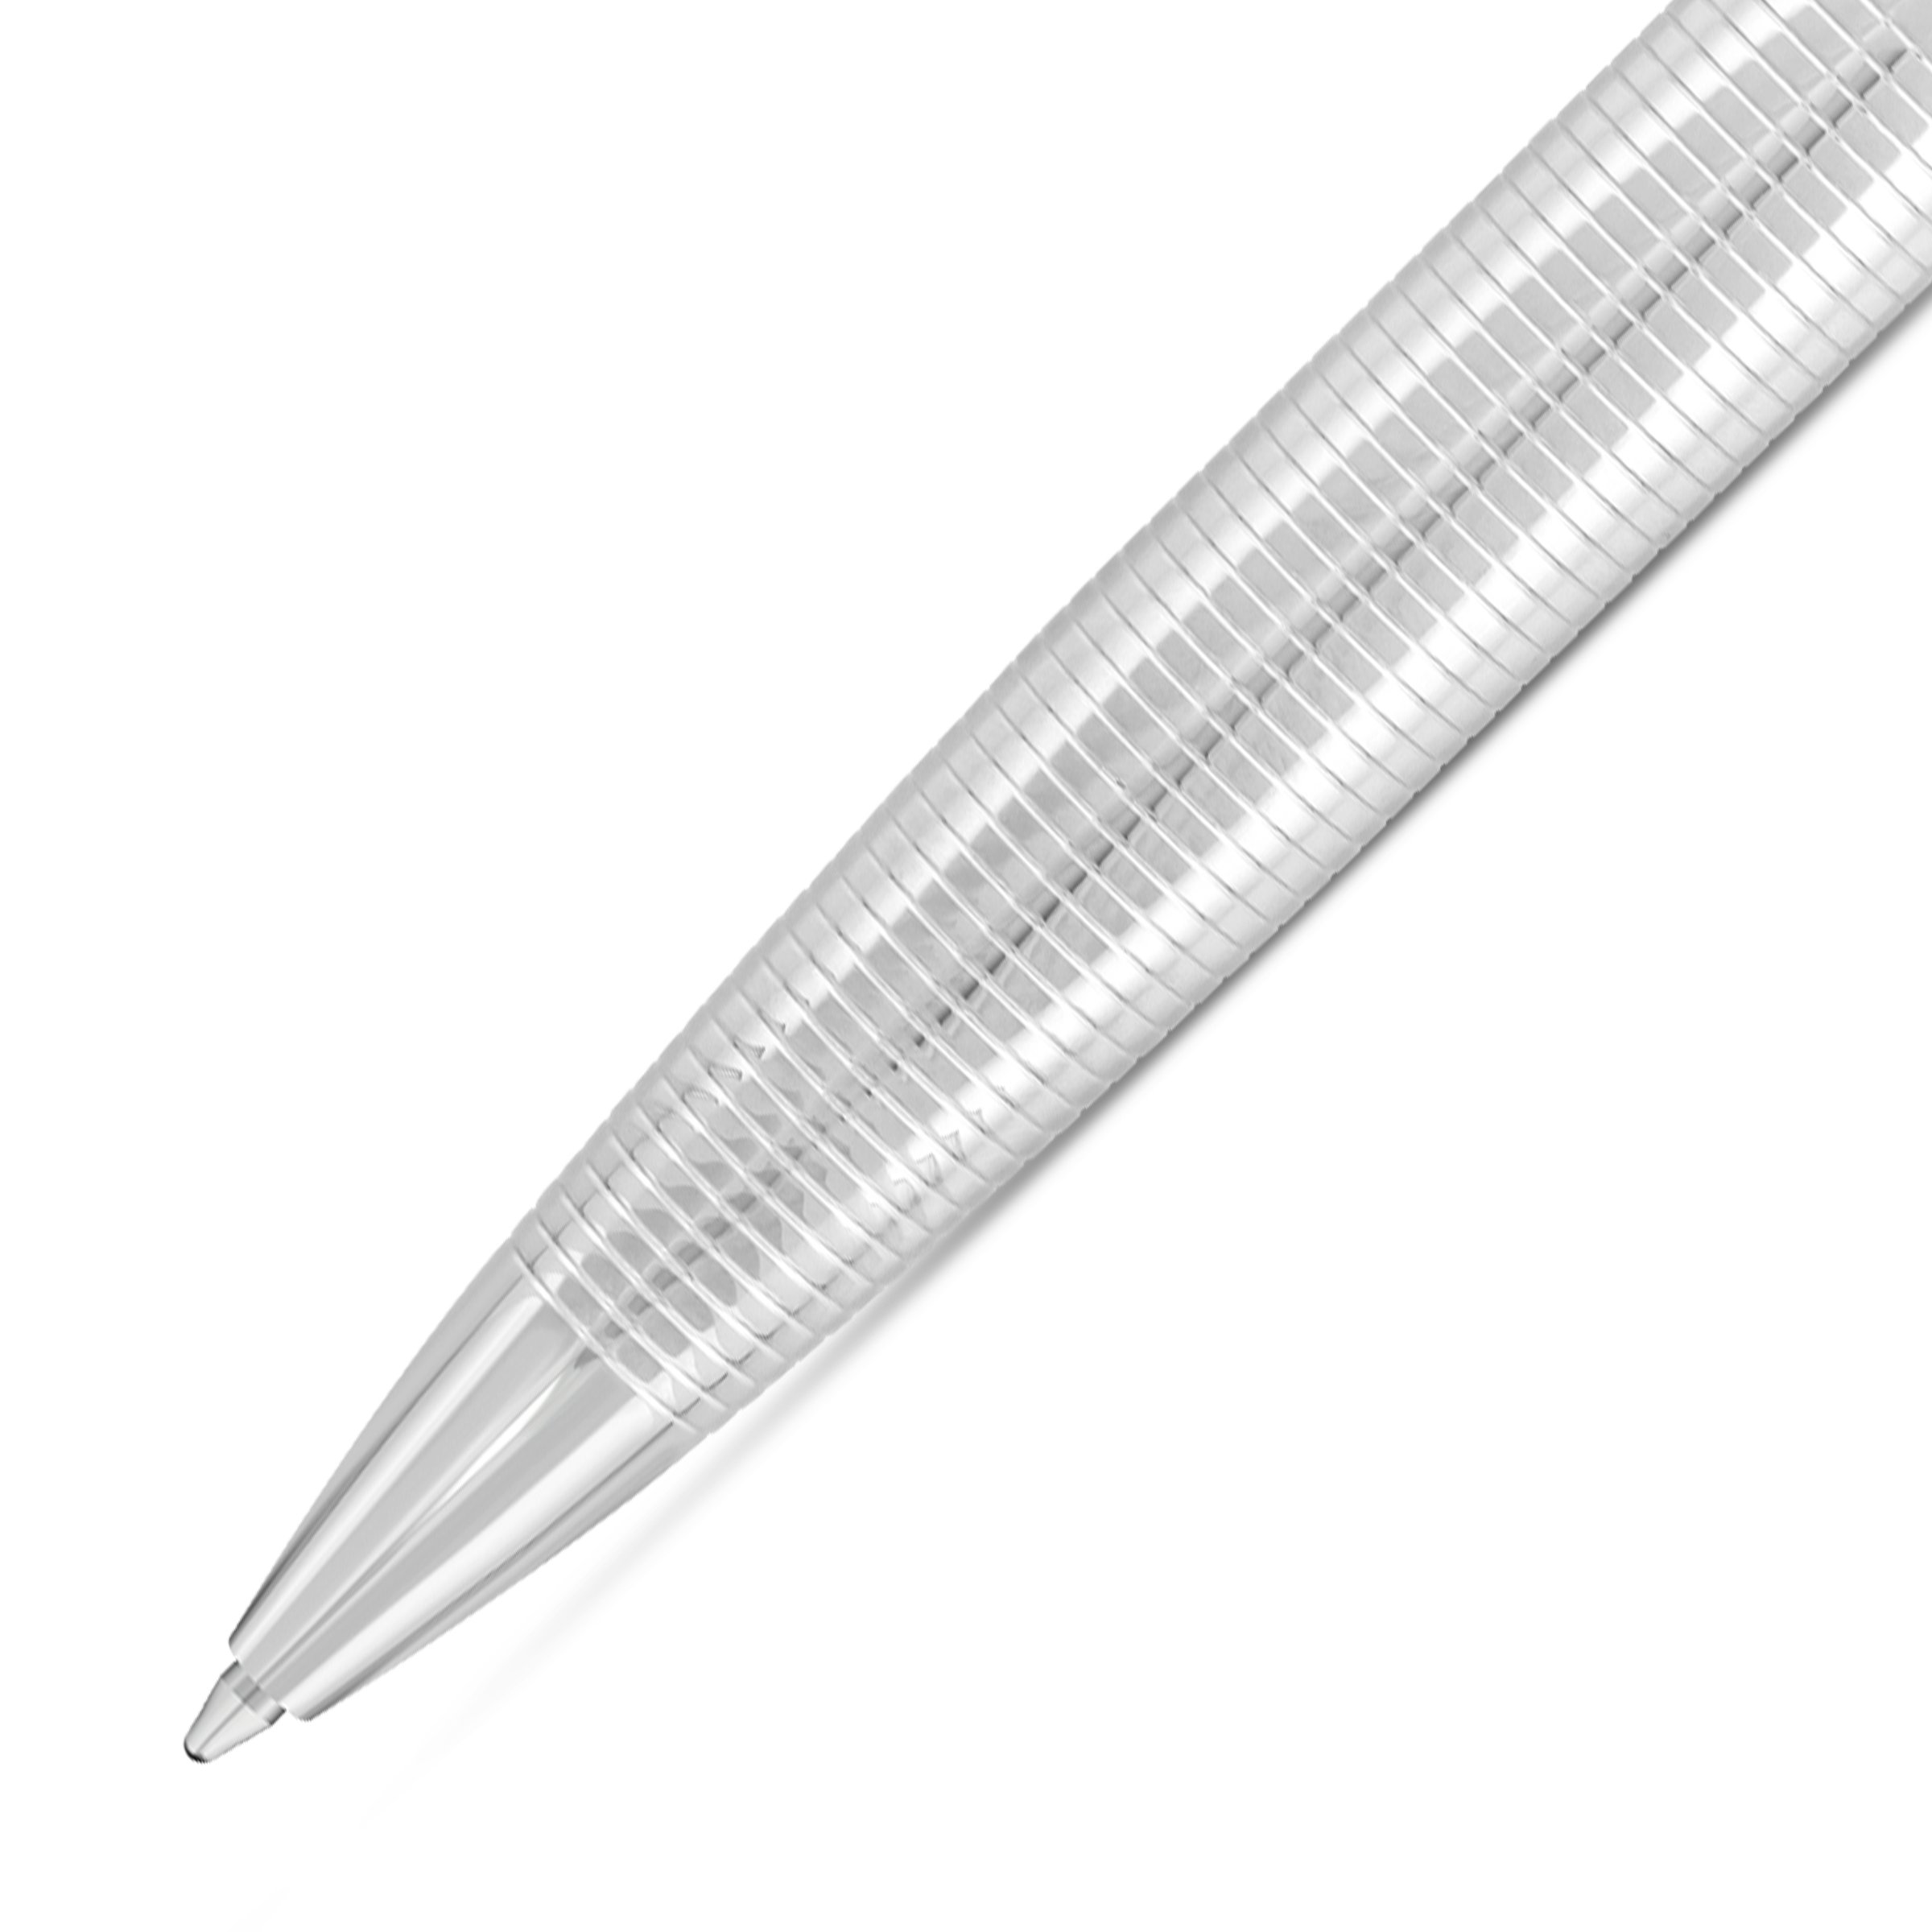 POLICE - Takota Pen For Men Black & Silver Color - PERGR0001401 2